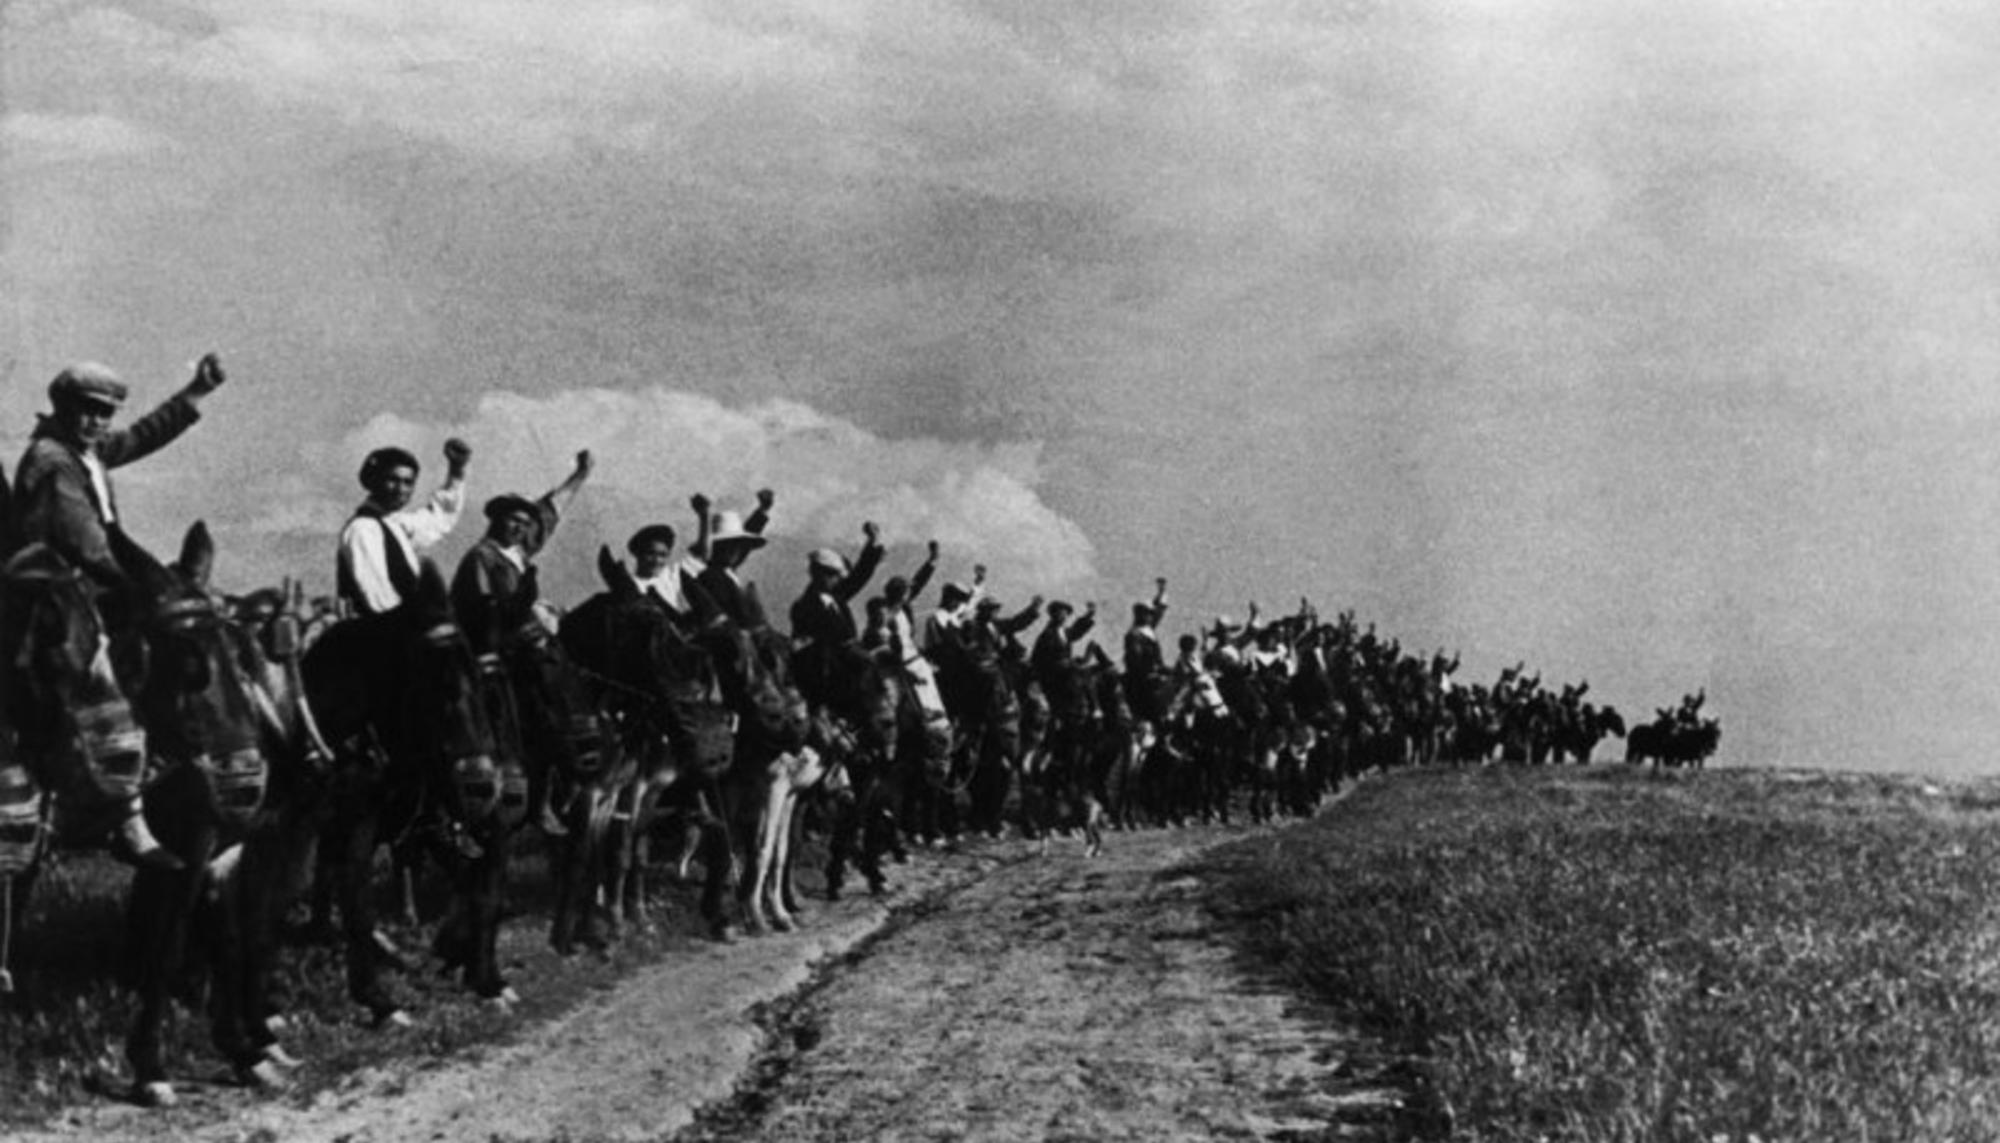 Levantamiento 25 de marzo 1936 en Extremadura. 70.000 campesinos extremeños ocupan tierras